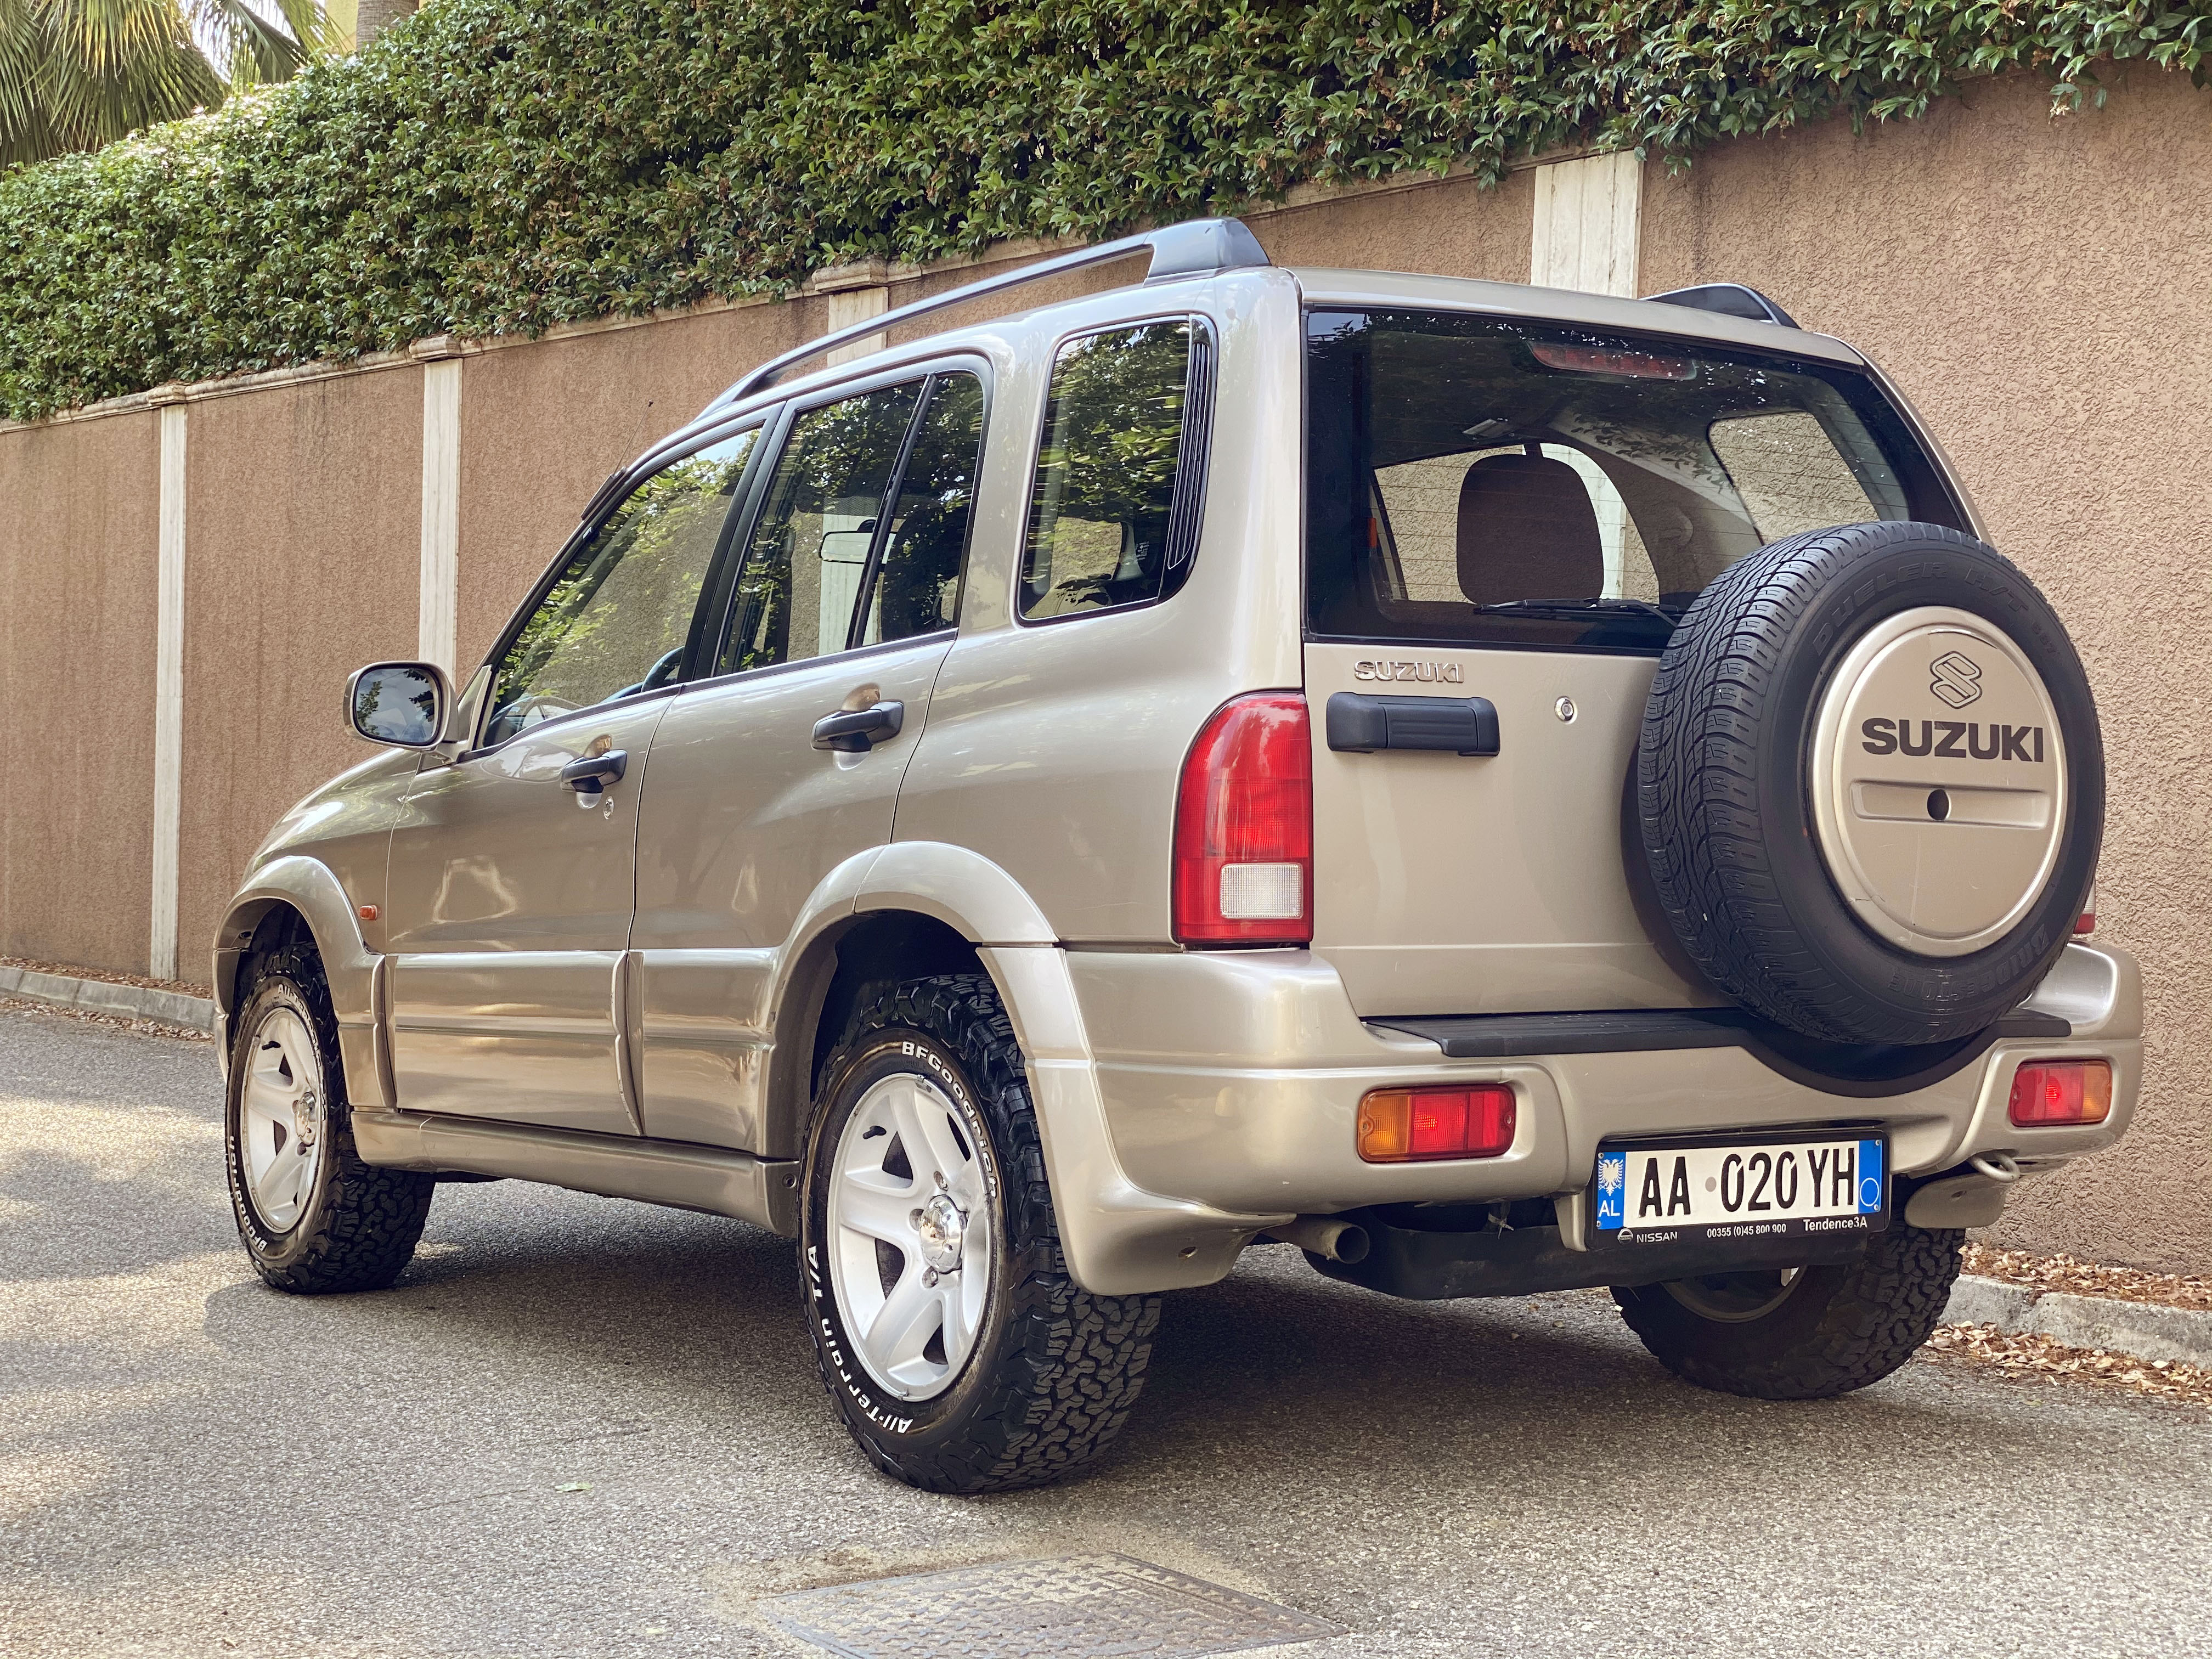 2003 Suzuki Grand Vitara në shitje në Shqipëria Makina.al